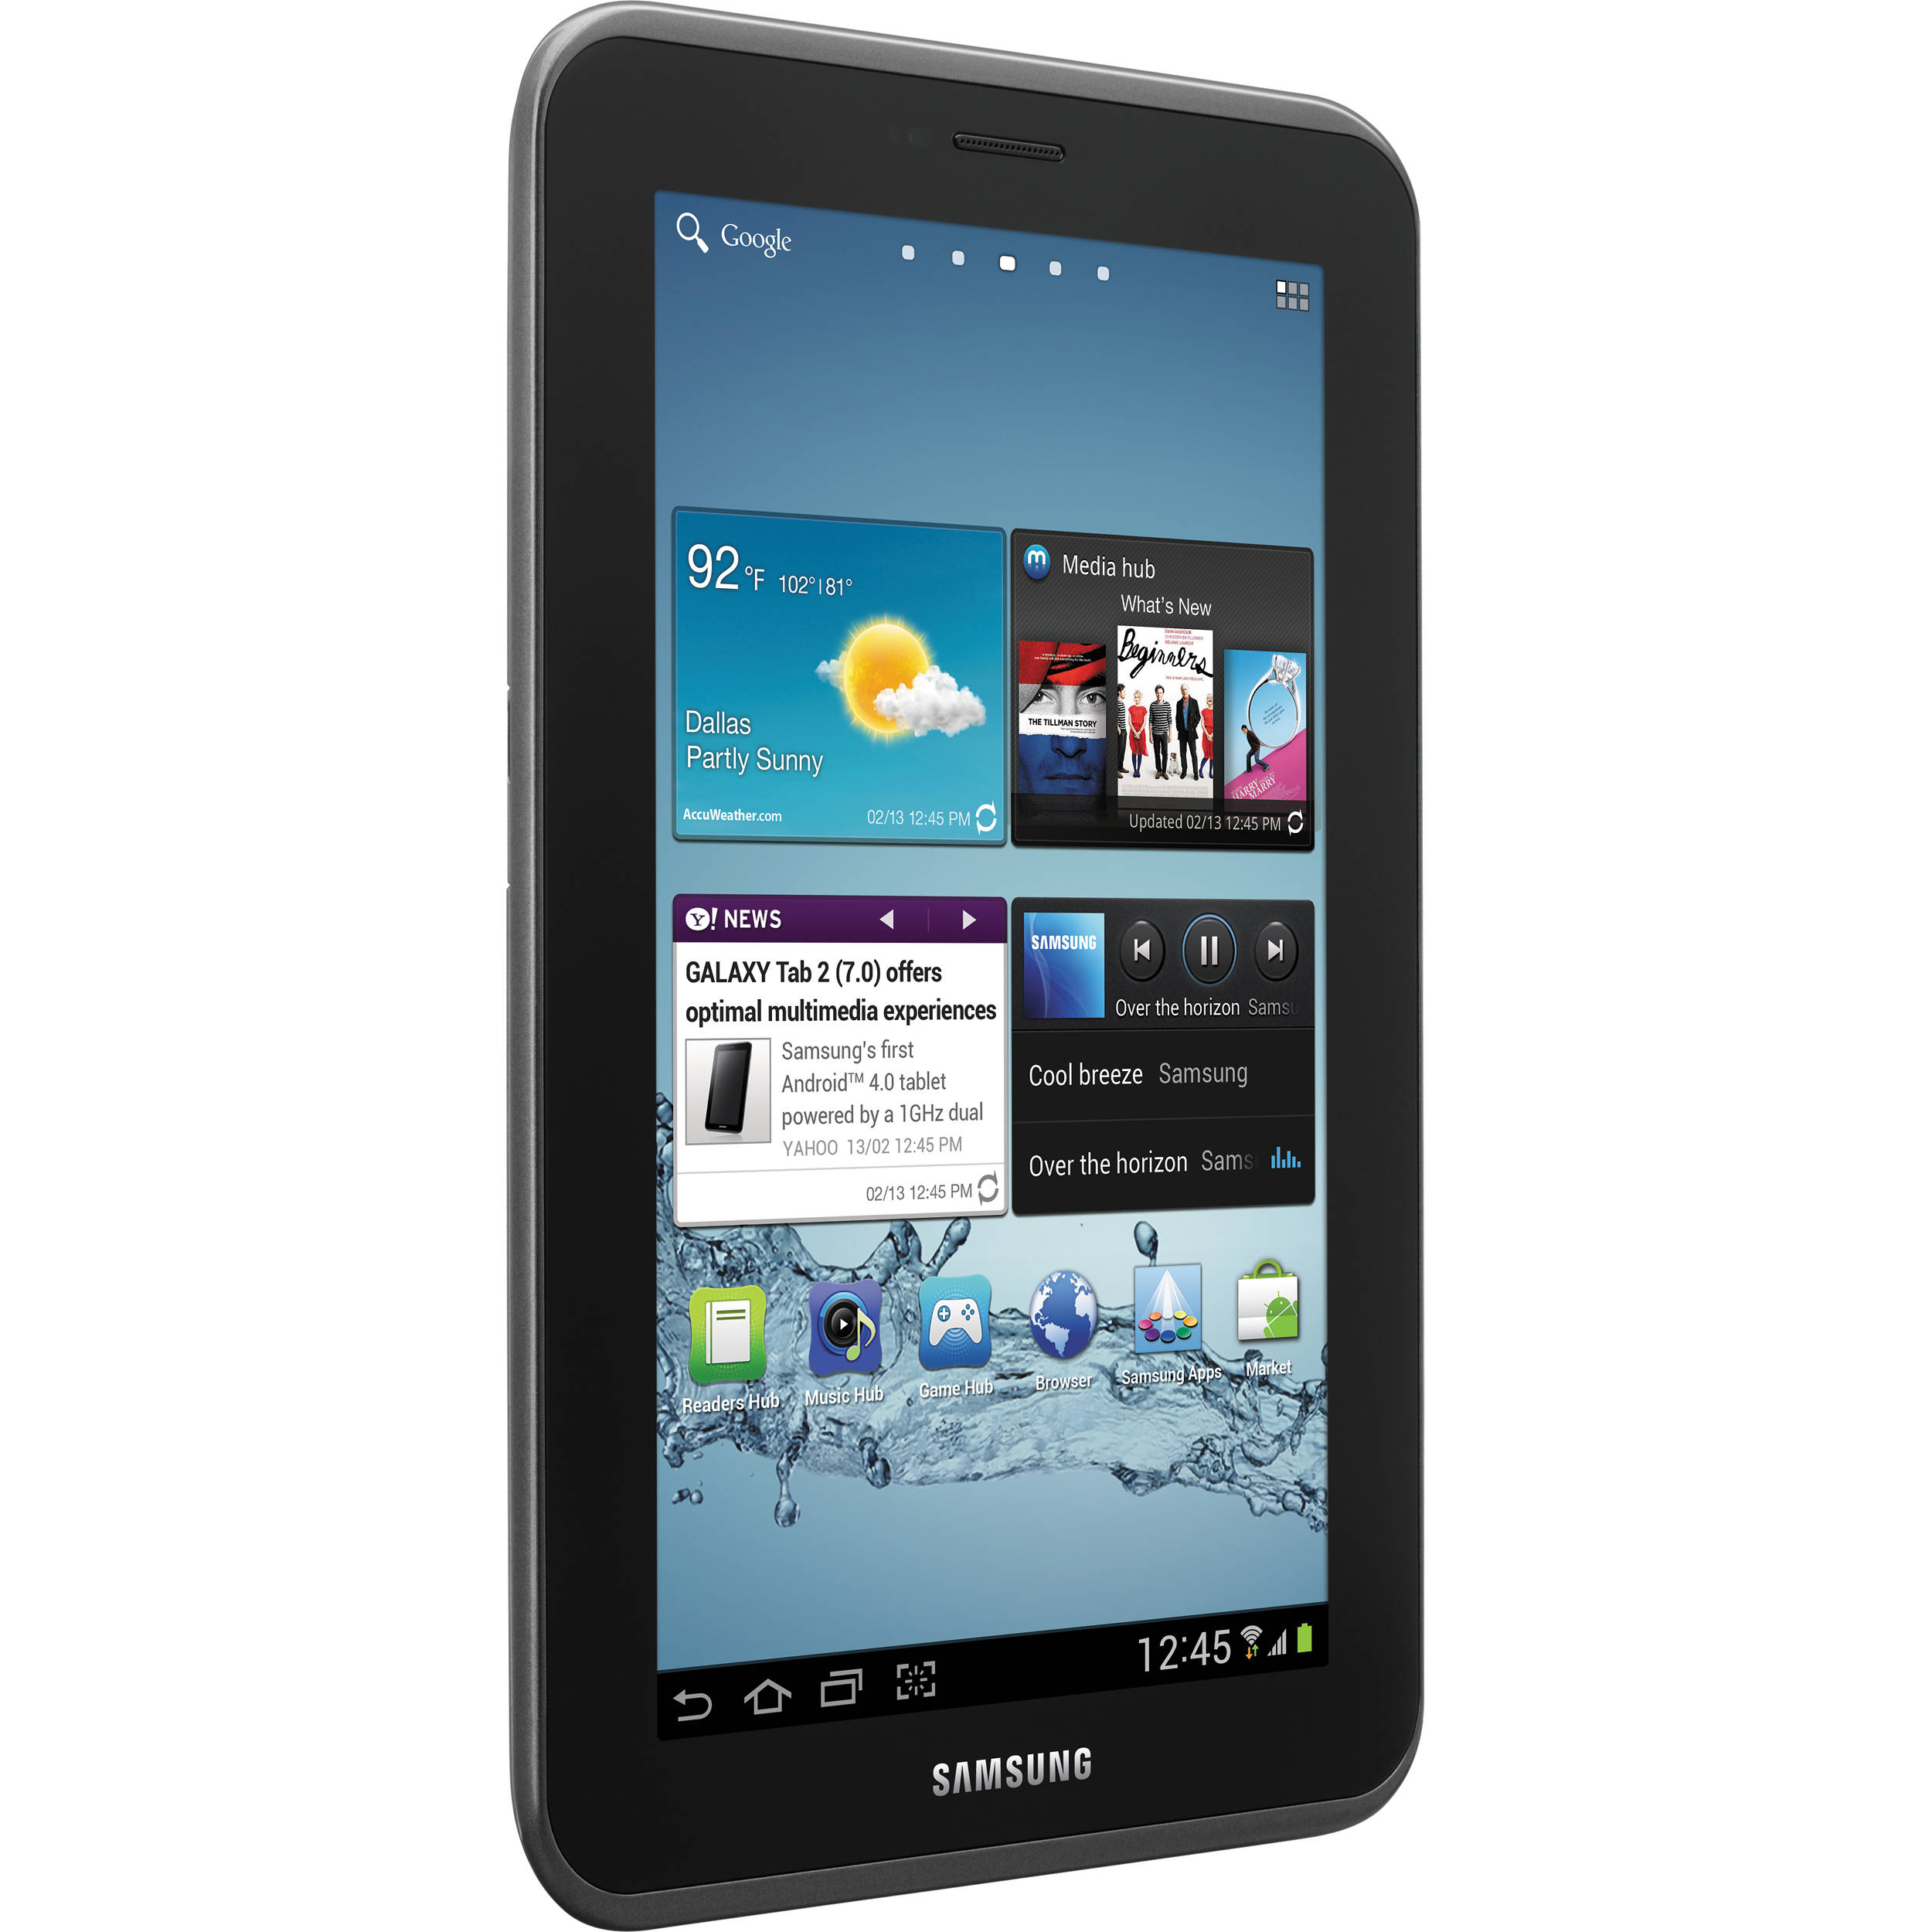 Samsung 2 7.0. Samsung Galaxy Tab 2 7.0 8gb. Samsung Tab a 7.0. Galaxy Tab 7.0 планшет. Планшет самсунг галакси таб 2.